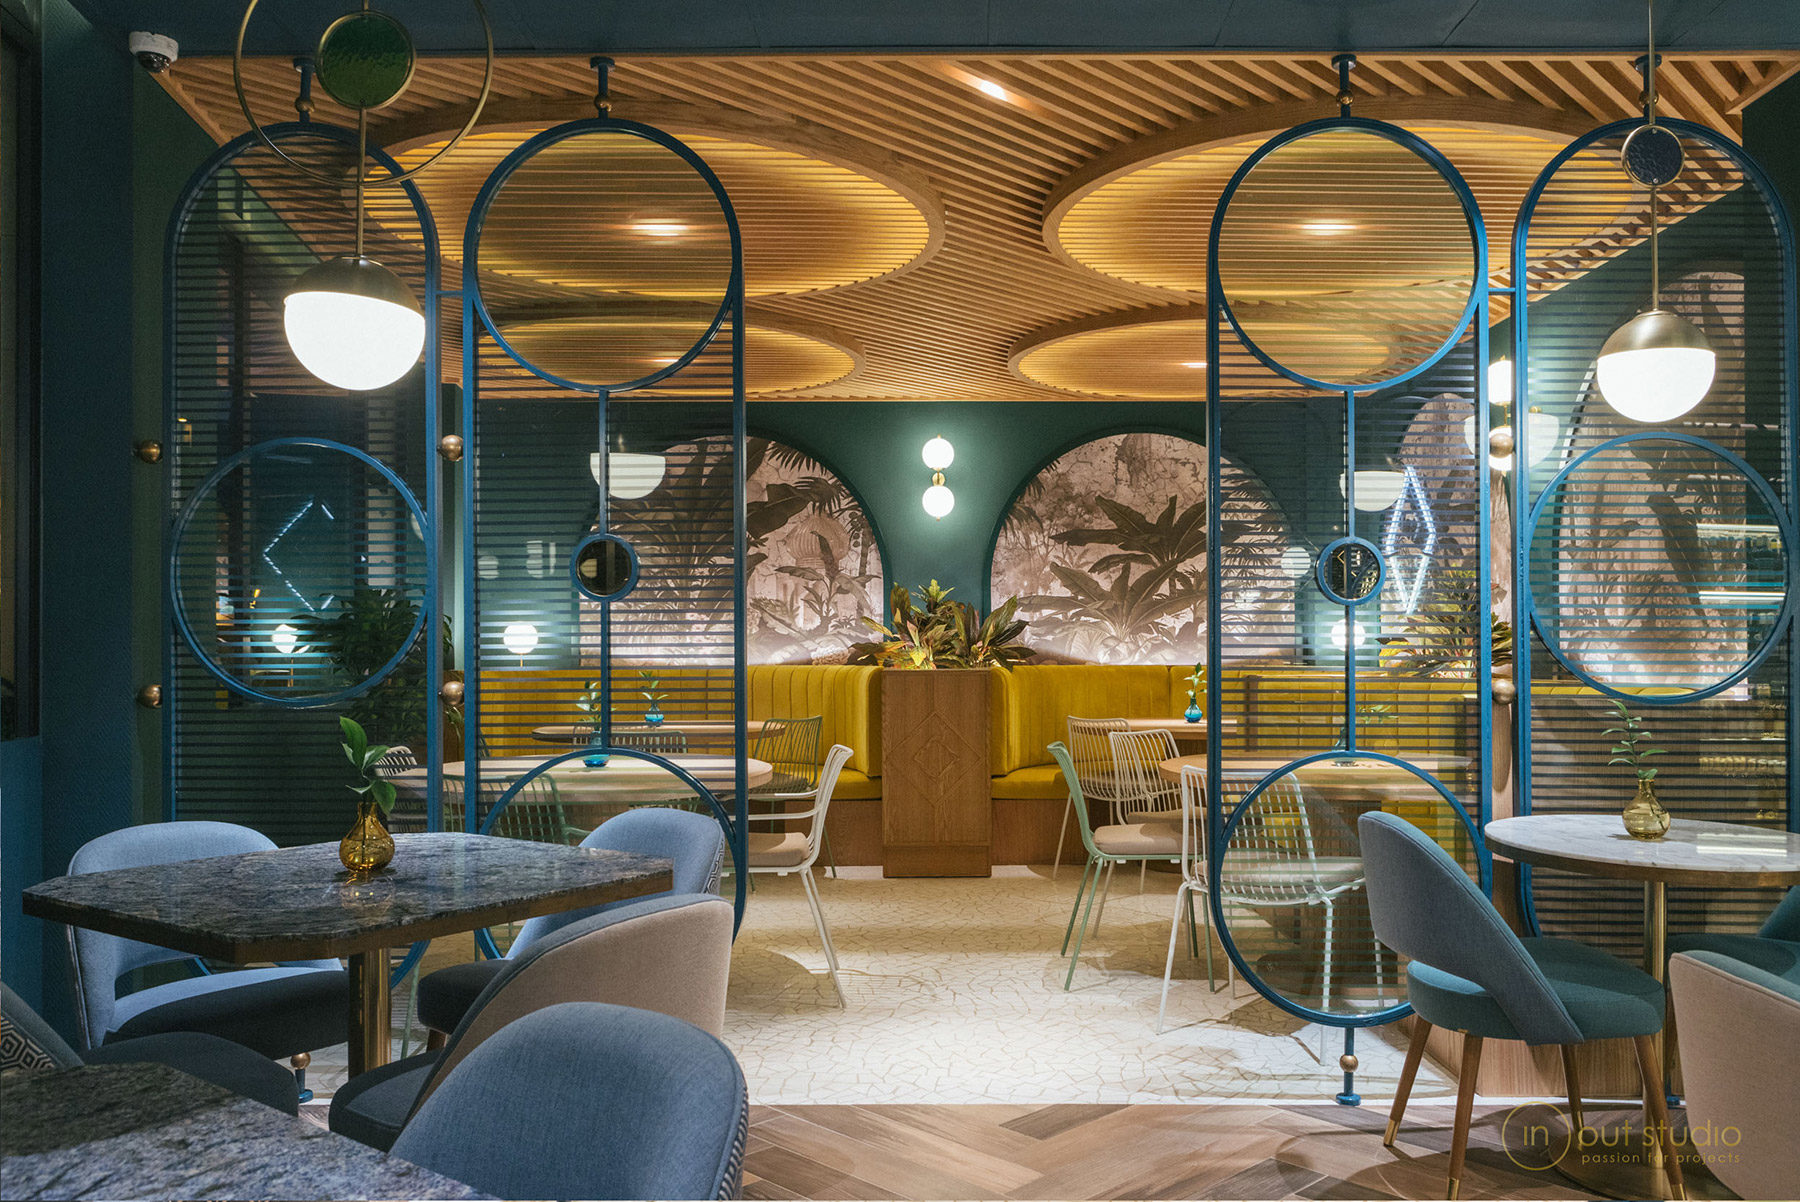 Nayra Iglesias realiza un proyecto espectacular para el restaurante Kai la Caleta, creando un espacio mágico donde el art decó se mezcla con estilos asiáticos